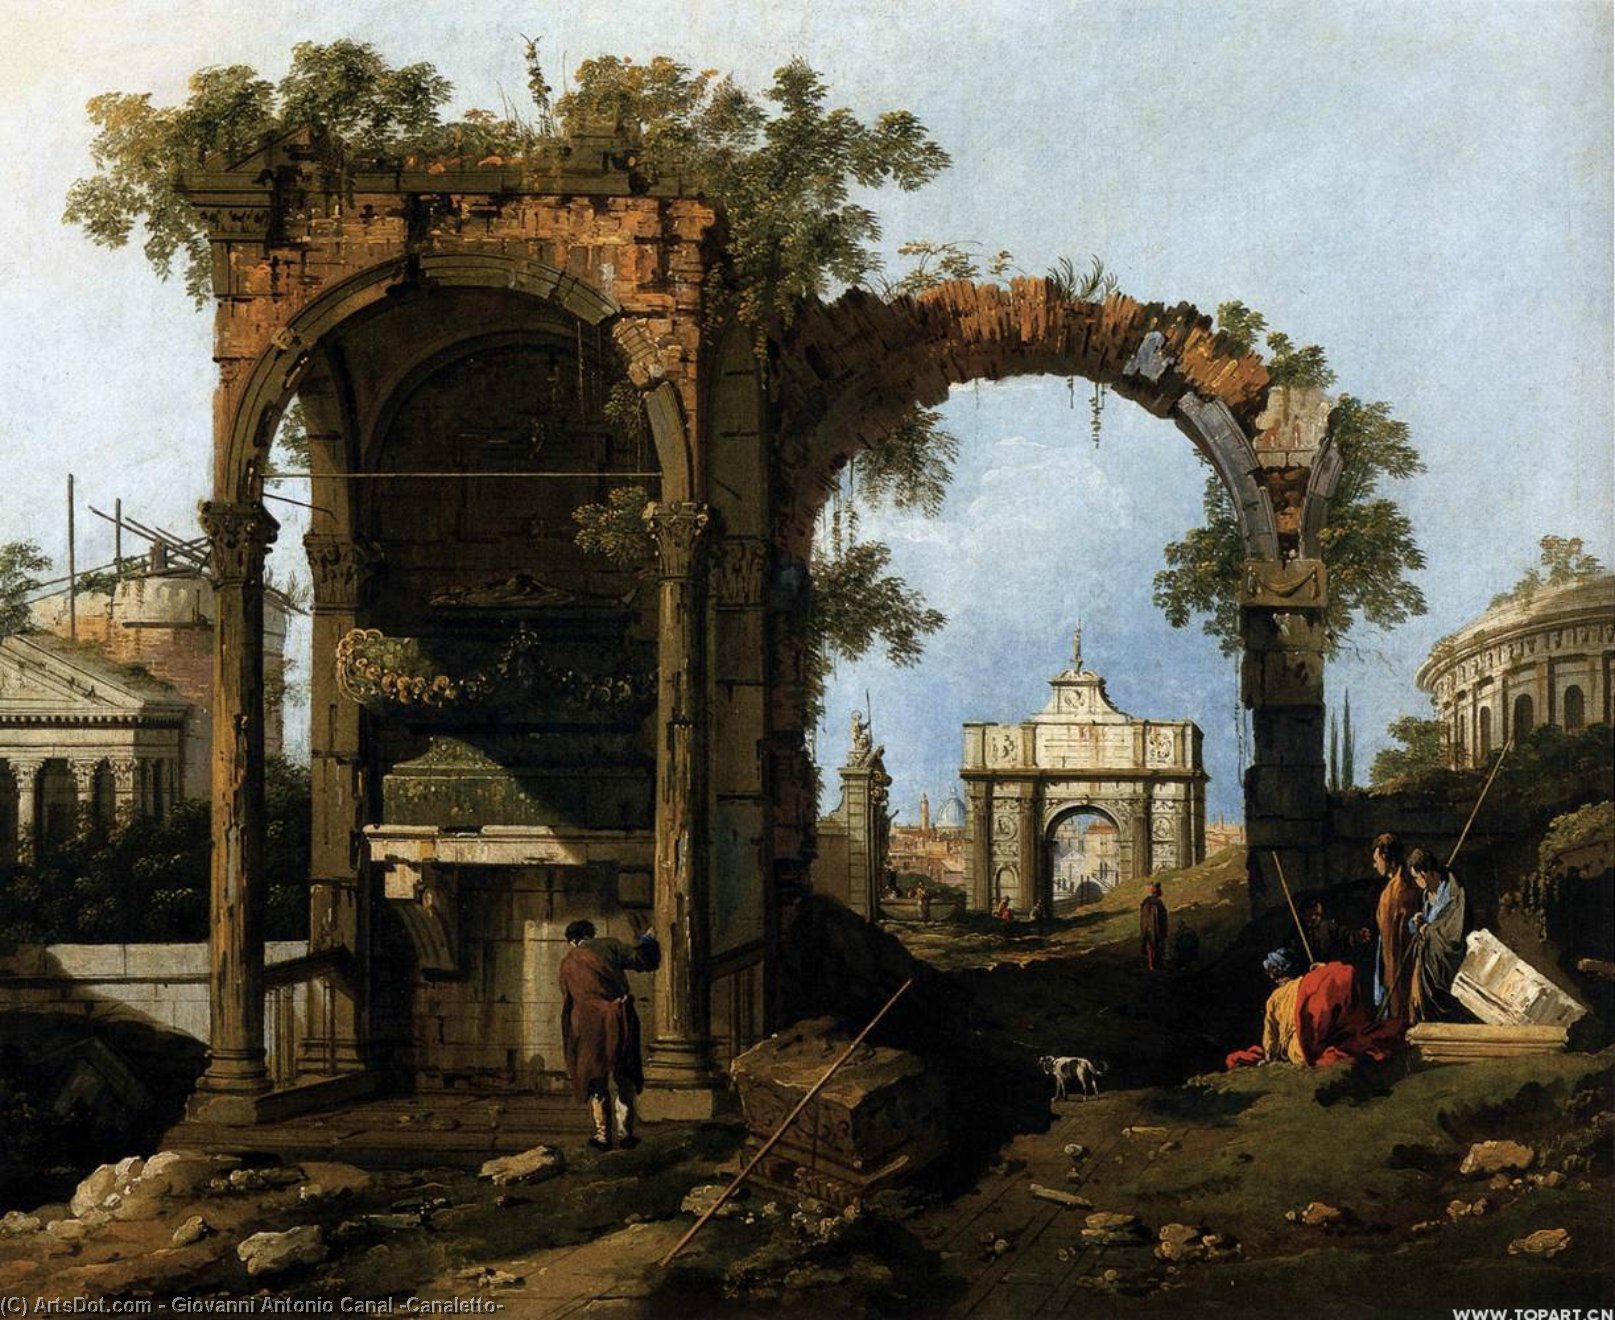 WikiOO.org - אנציקלופדיה לאמנויות יפות - ציור, יצירות אמנות Giovanni Antonio Canal (Canaletto) - Capriccio with Classical Ruins and Buildings